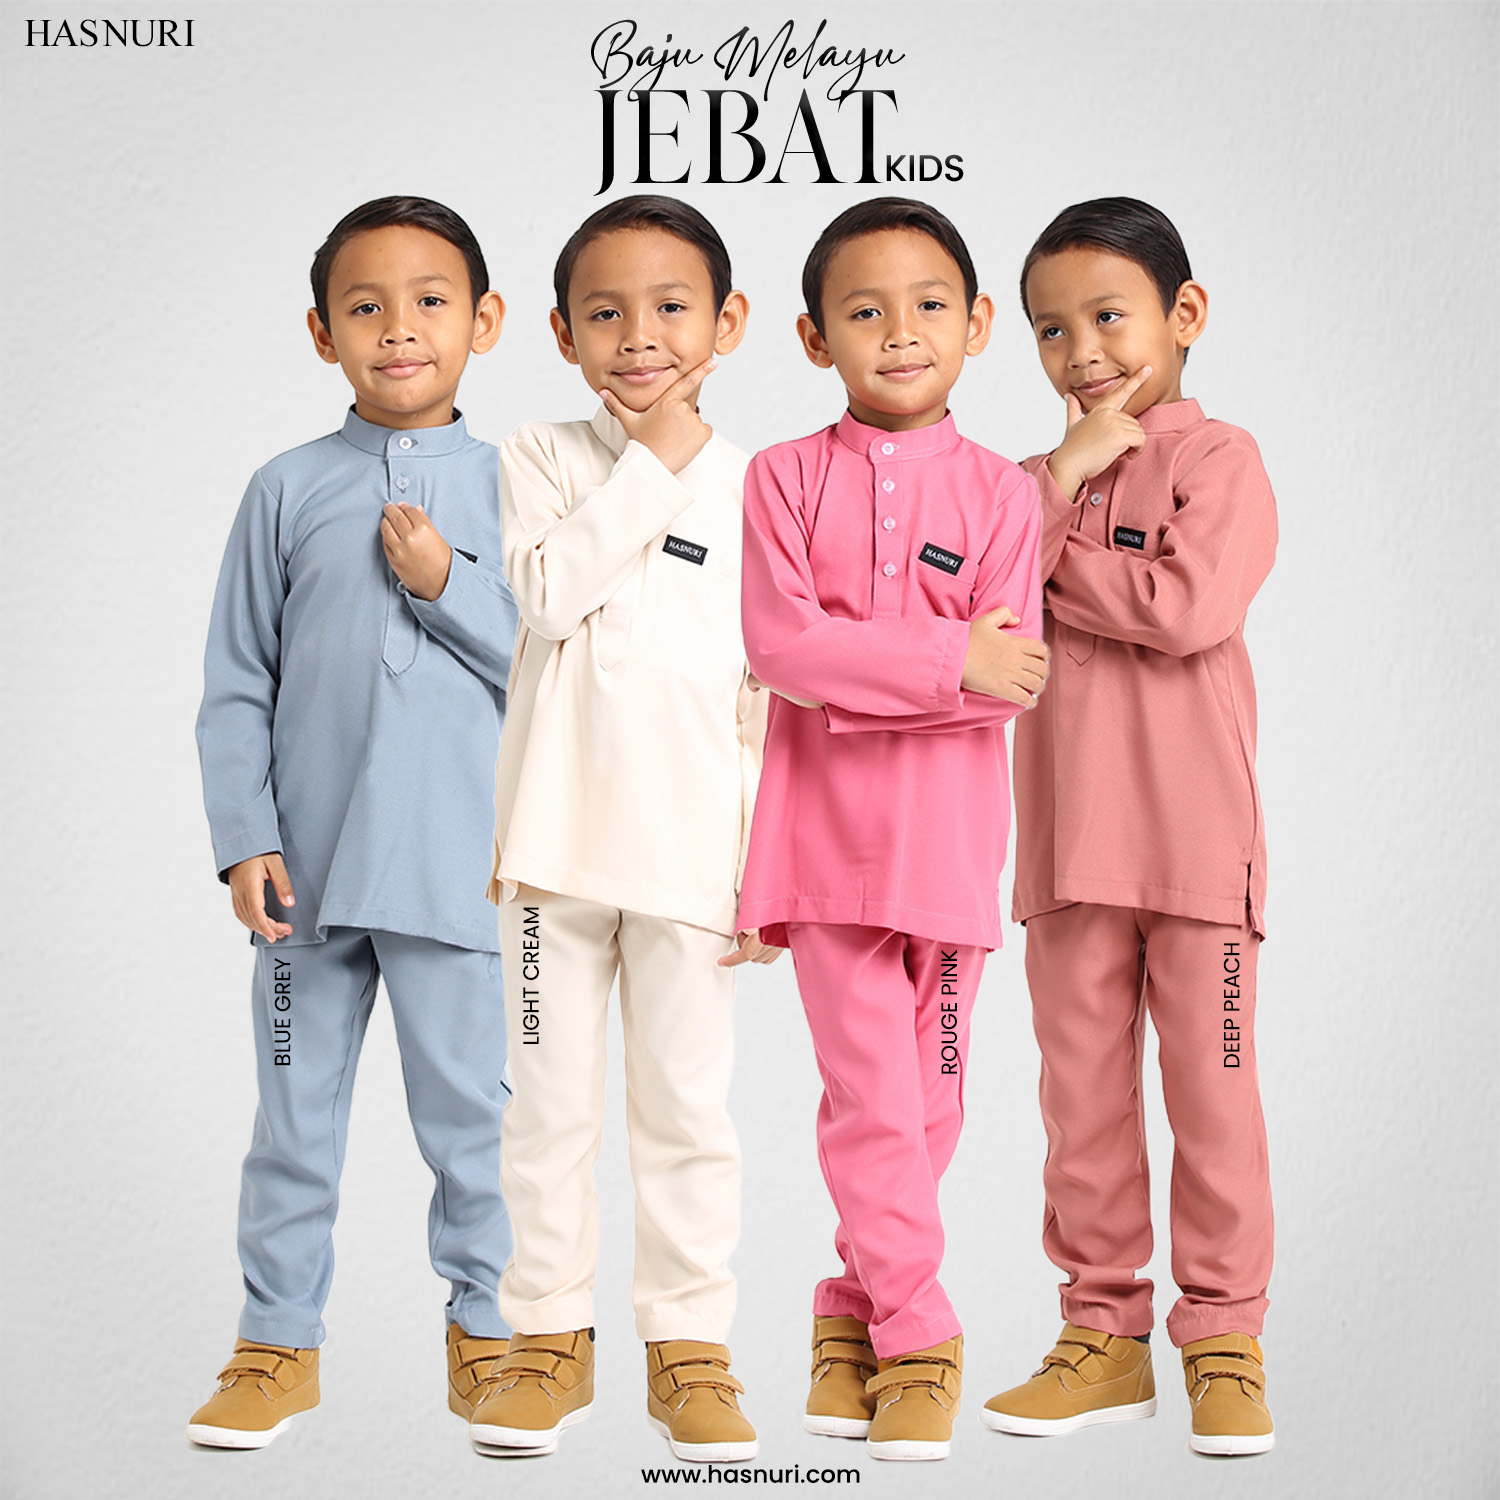 Baju Melayu Jebat Kids - Light Cream